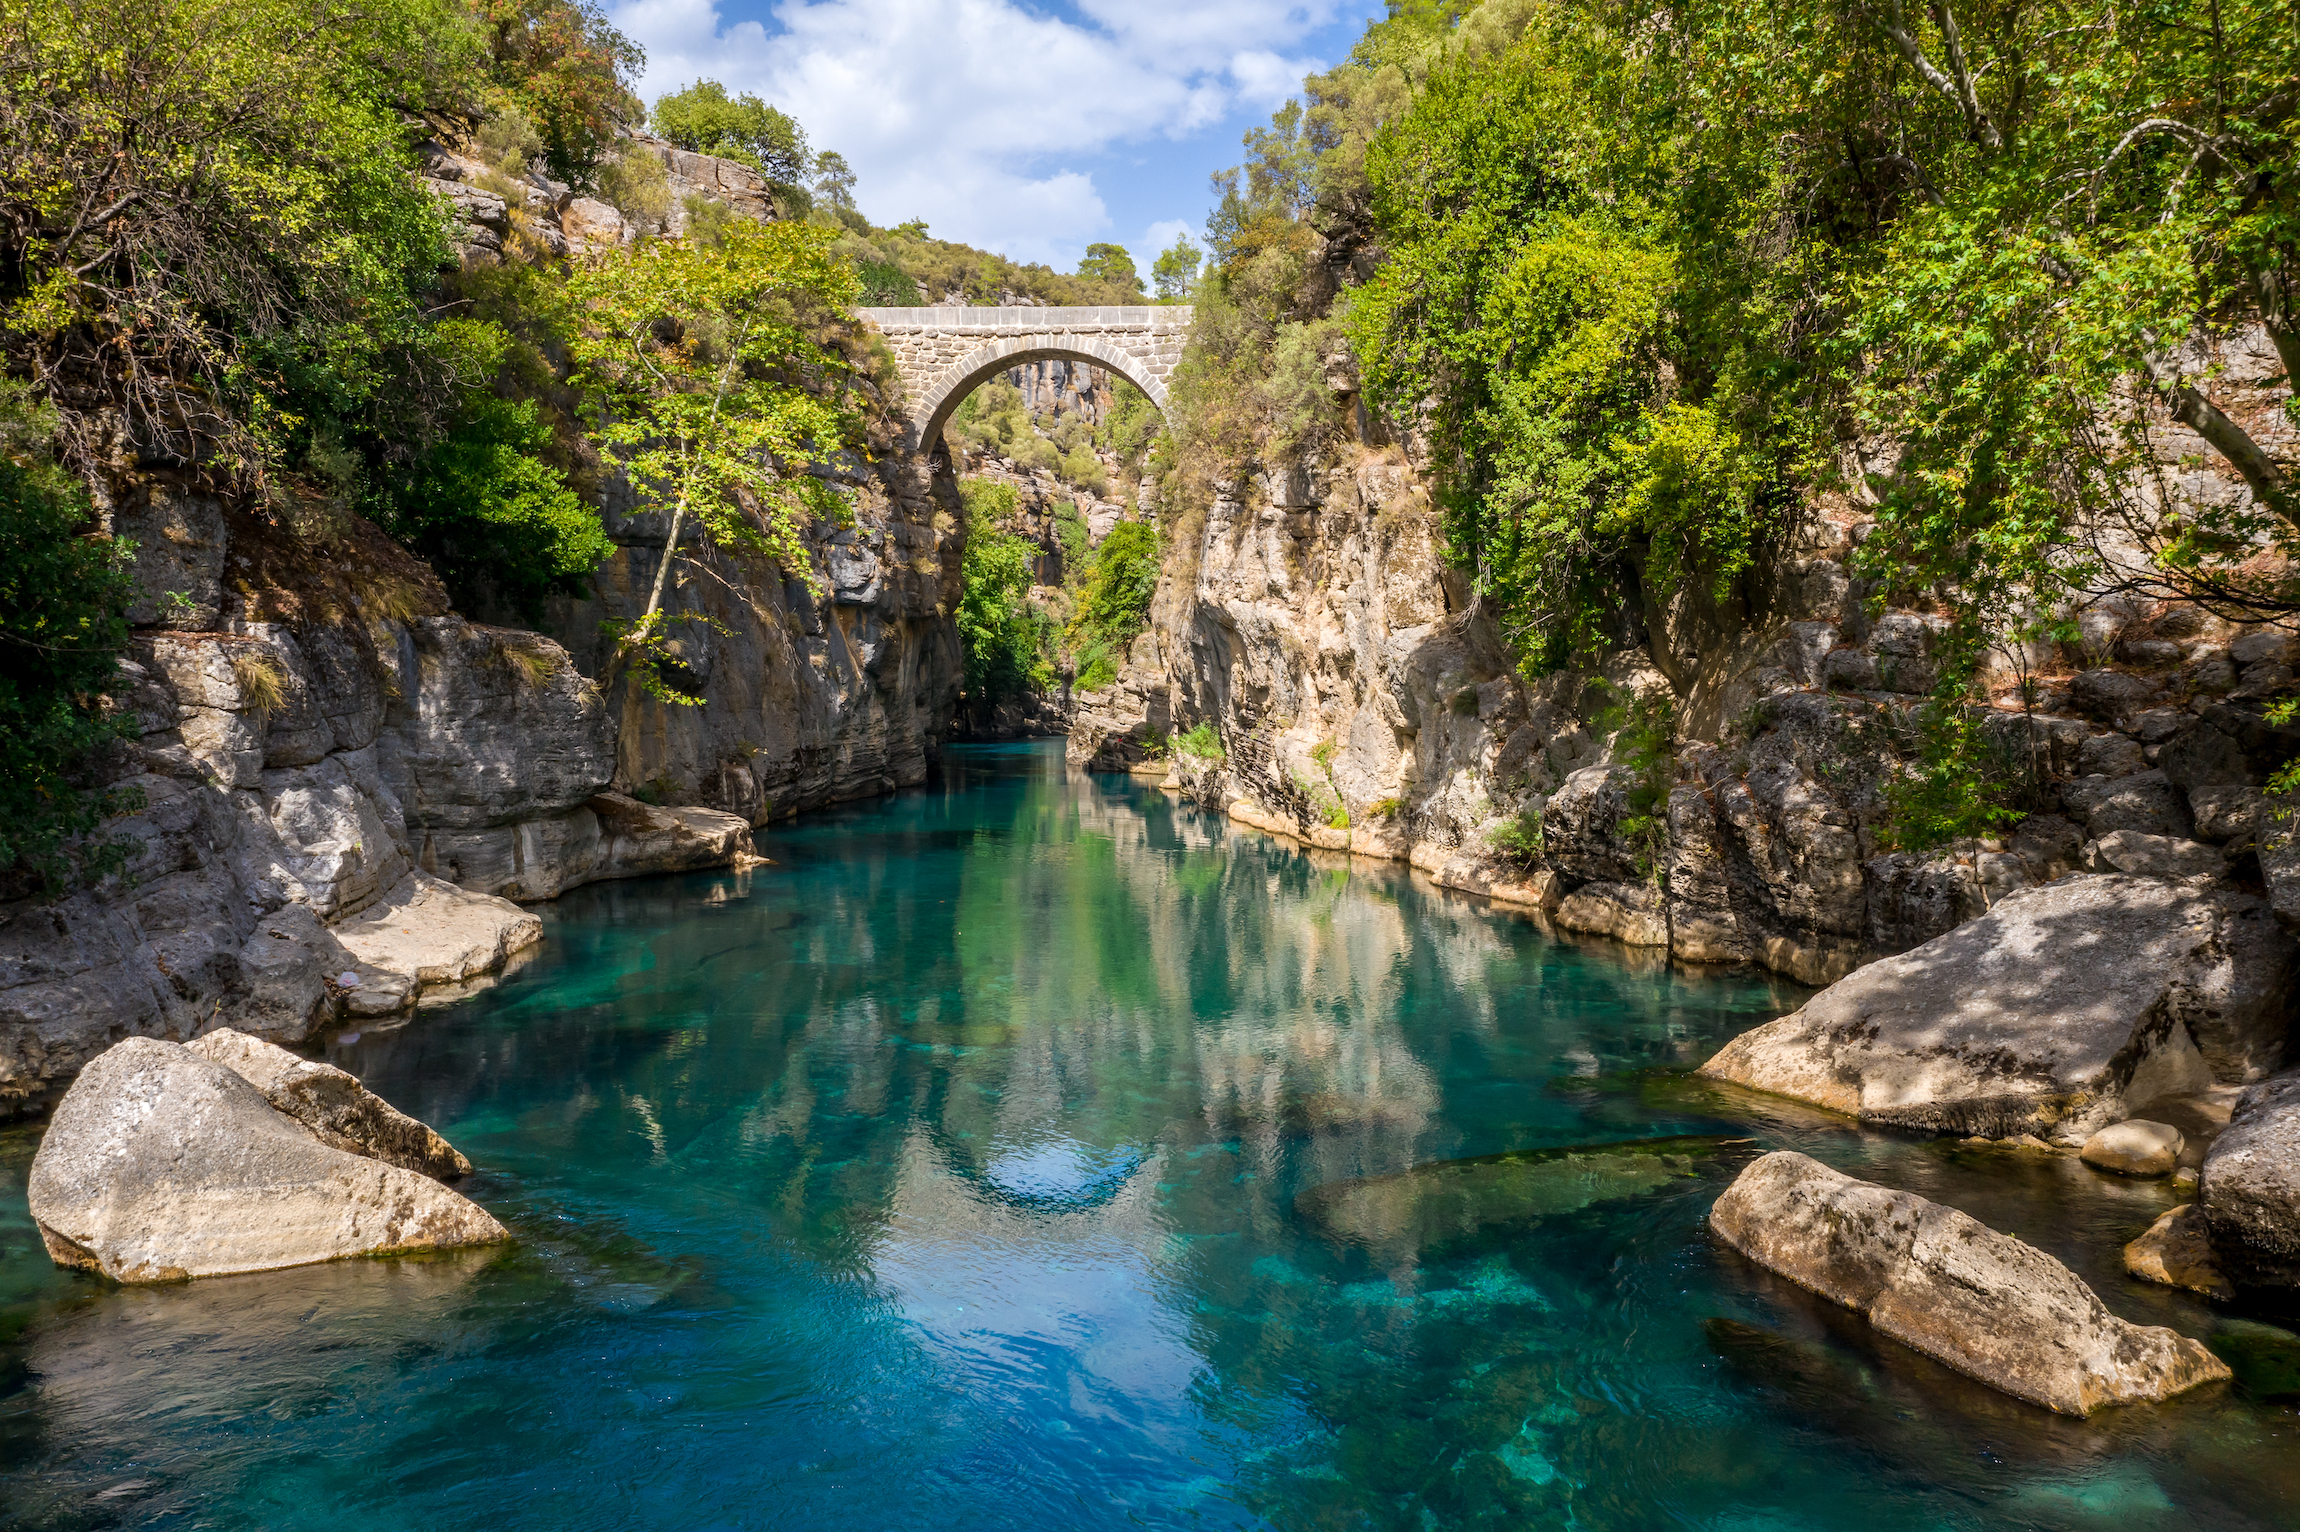 Starożytny most łukowy Oluk nad przełomem rzeki Koprucay w Parku Narodowym Koprulu w Turcji. Panoramiczny widok na kanion i niebieską burzliwą górską rzekę